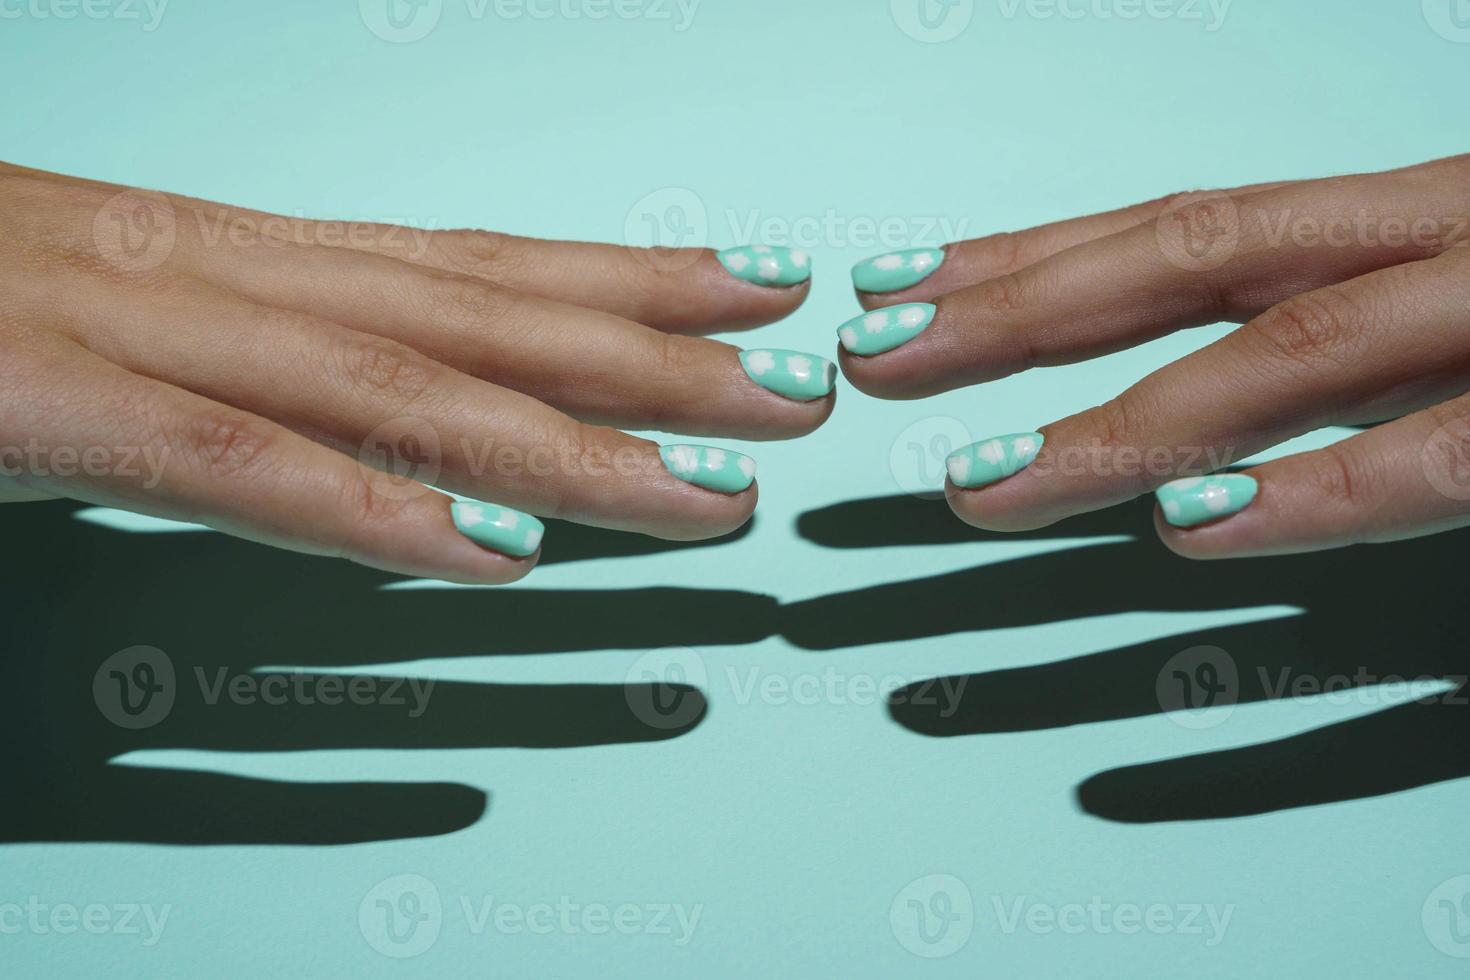 contact, de tintje van de vingers van twee mooi vrouw handen, vingers bereiken uit naar elk ander. foto